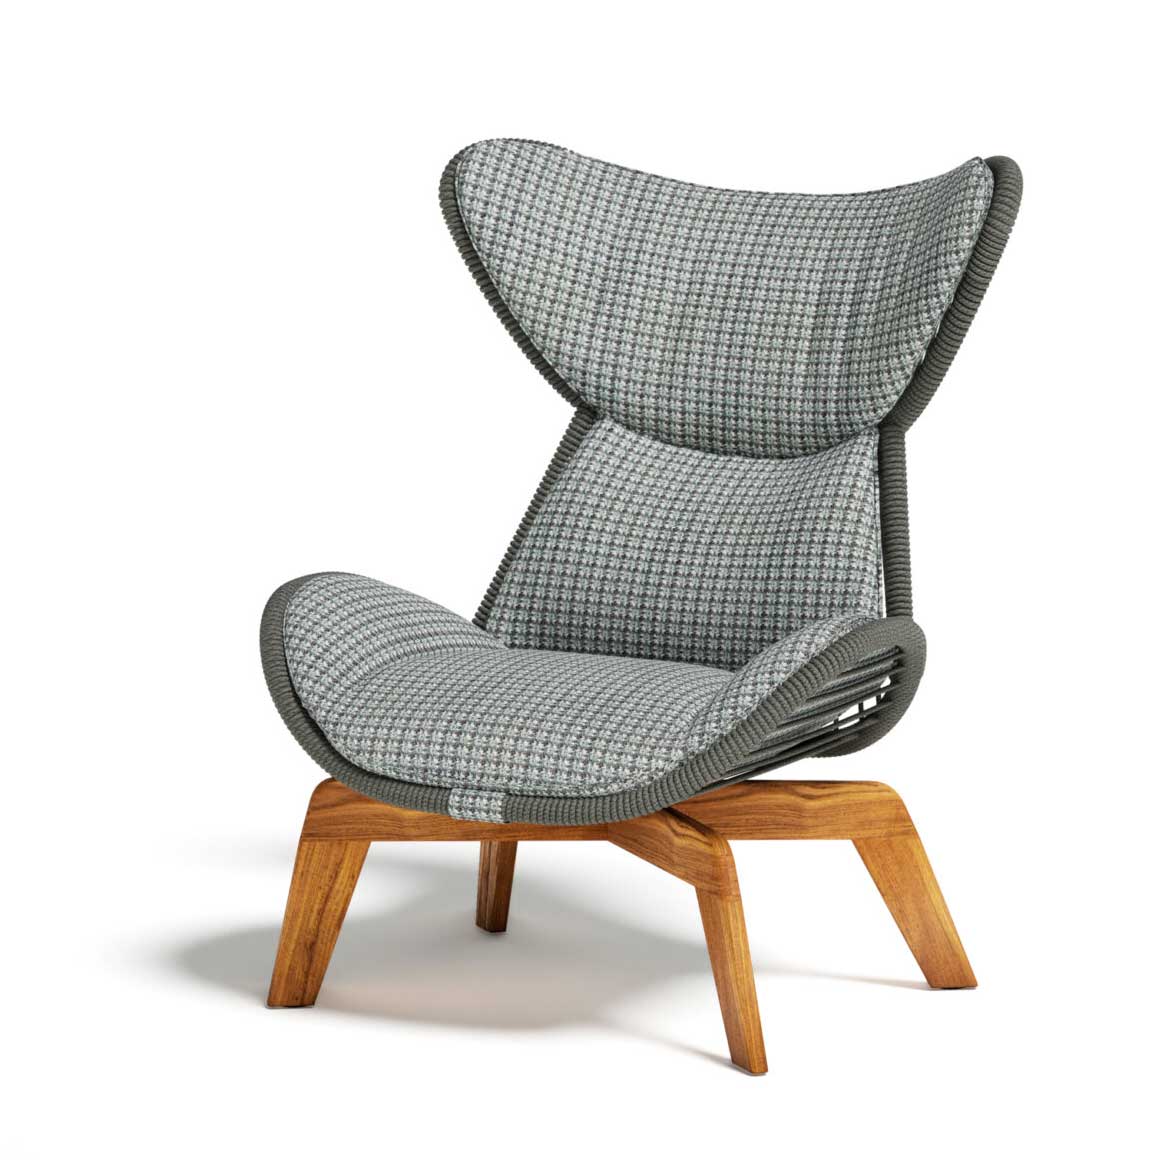 Élégance digne d'un article d'intérieur, ce fauteuil lounge a base en teck et structure tubulaire avec cordes et coussins rembourrés. Livraison gratuite.